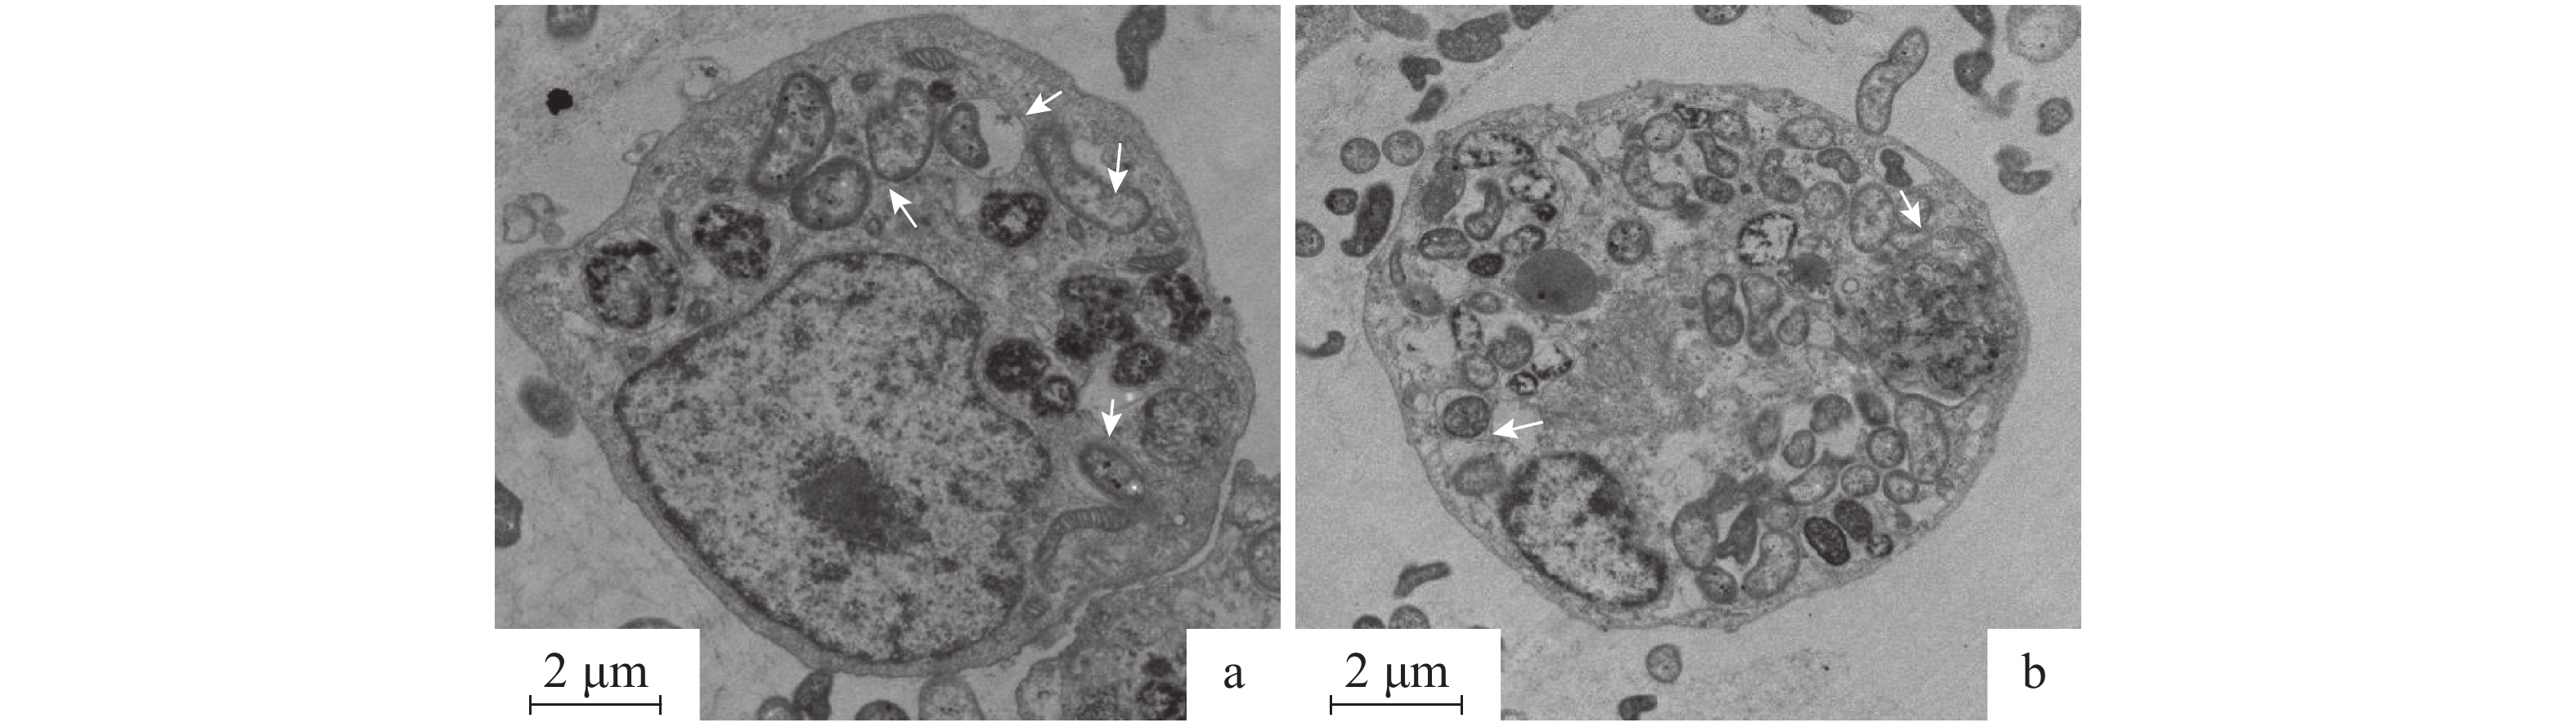 草鱼肠巨噬细胞的分离培养与鉴定